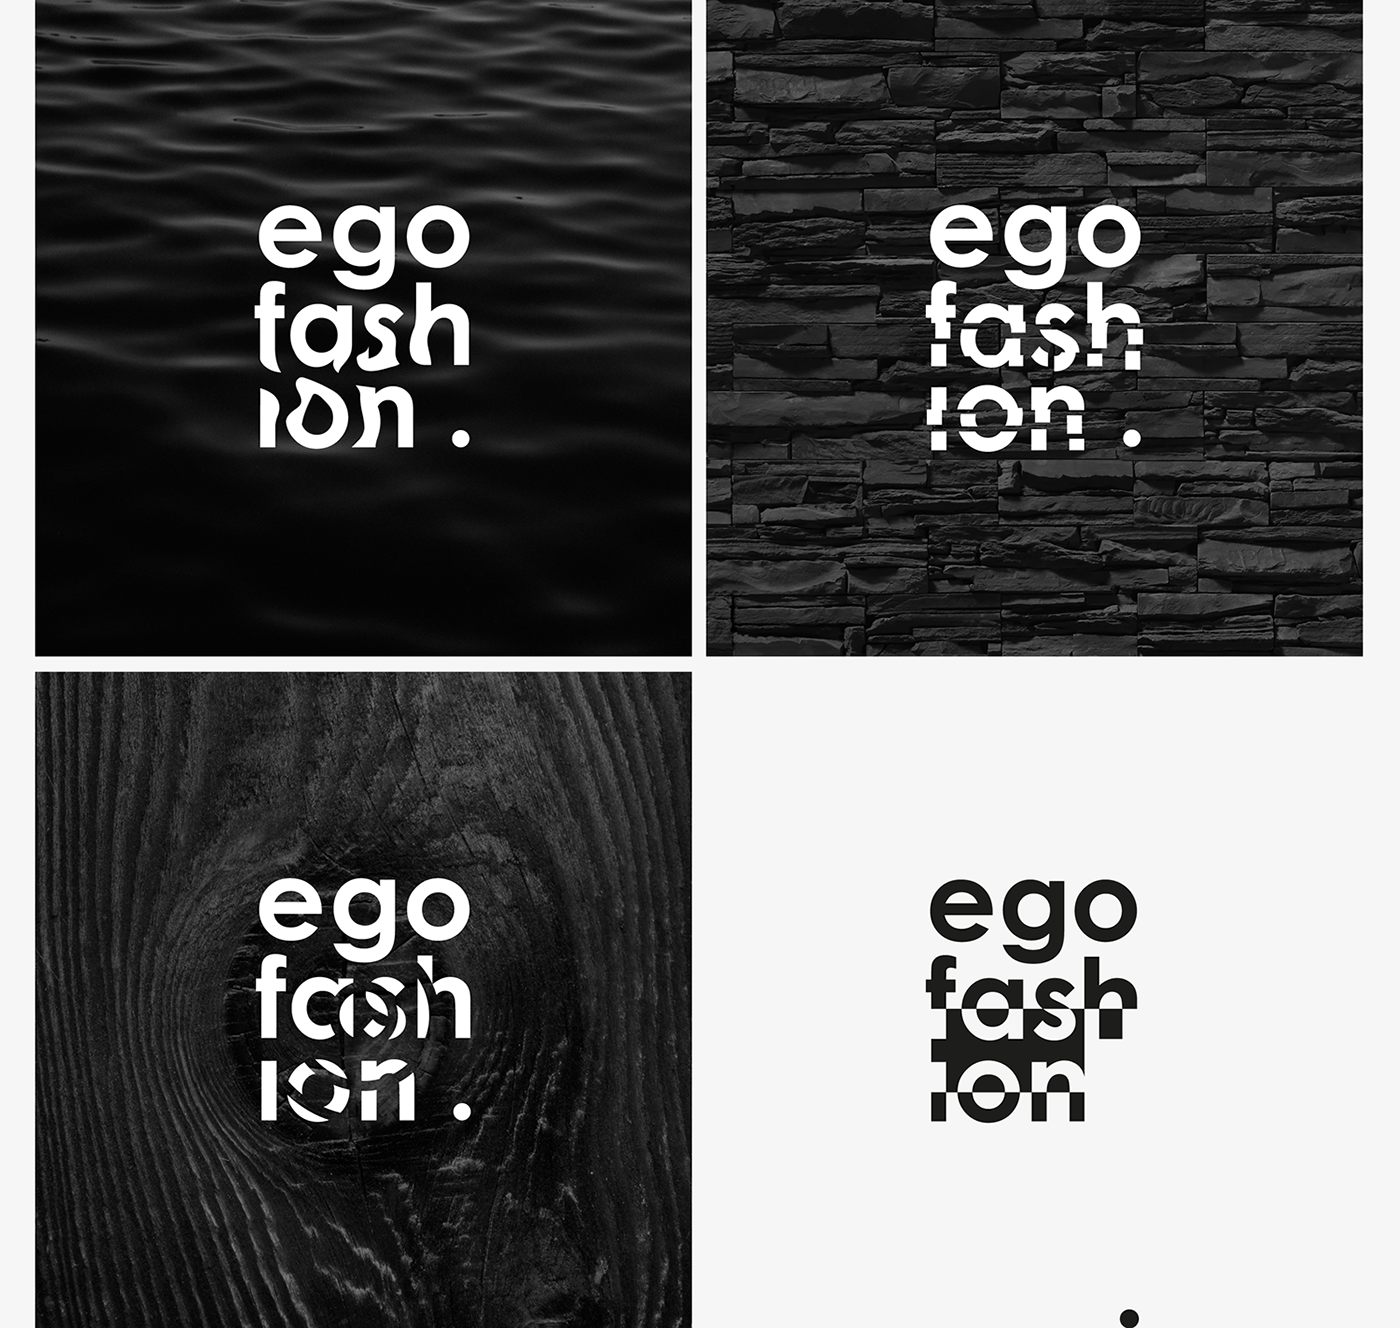 Fashion  studio ego fashion studio brand identity branding  graphic design  identity typography  